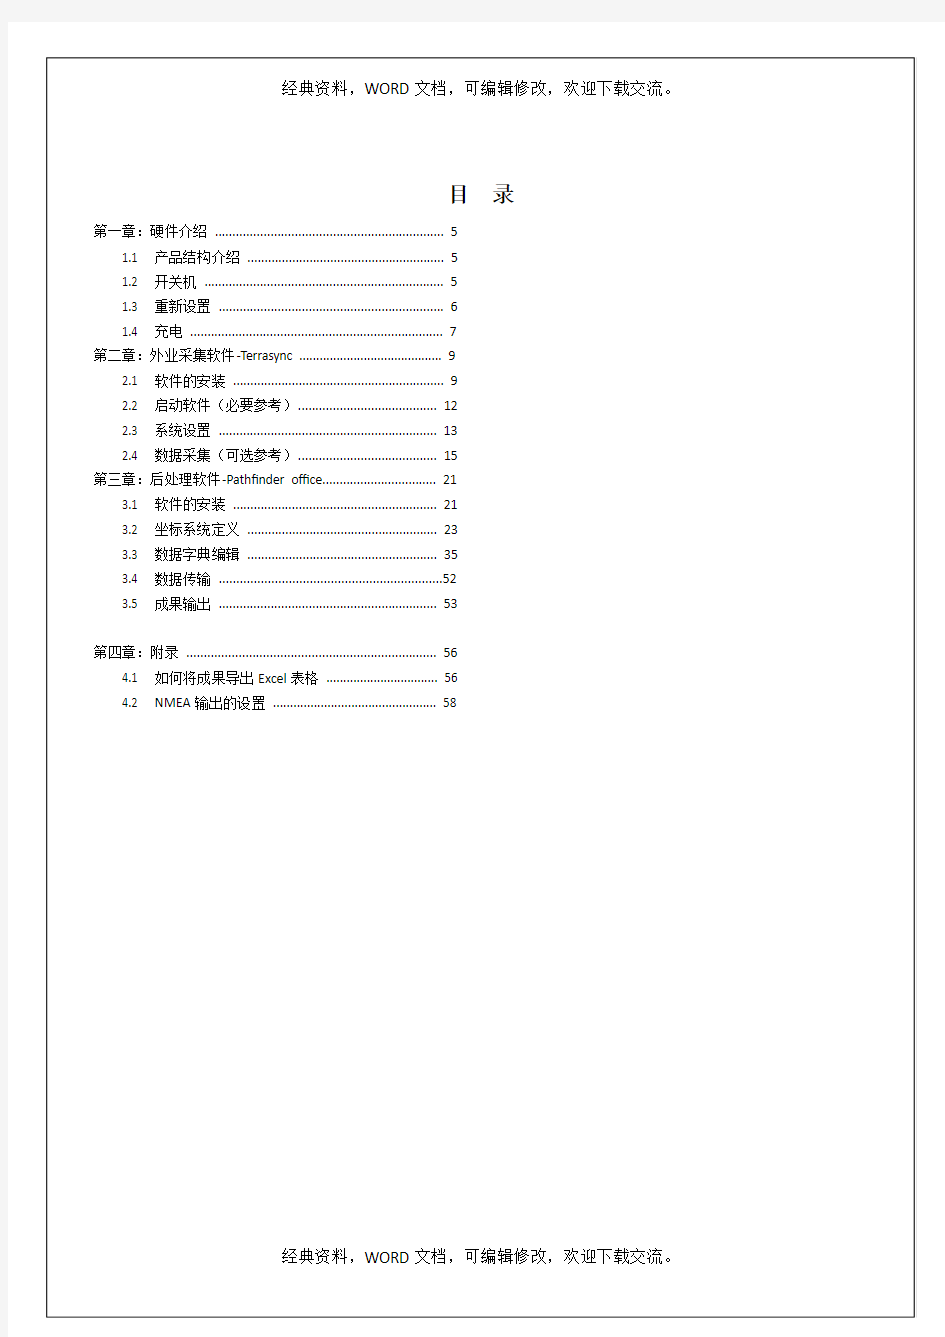 Trimble 中文简易使用手册版本35p